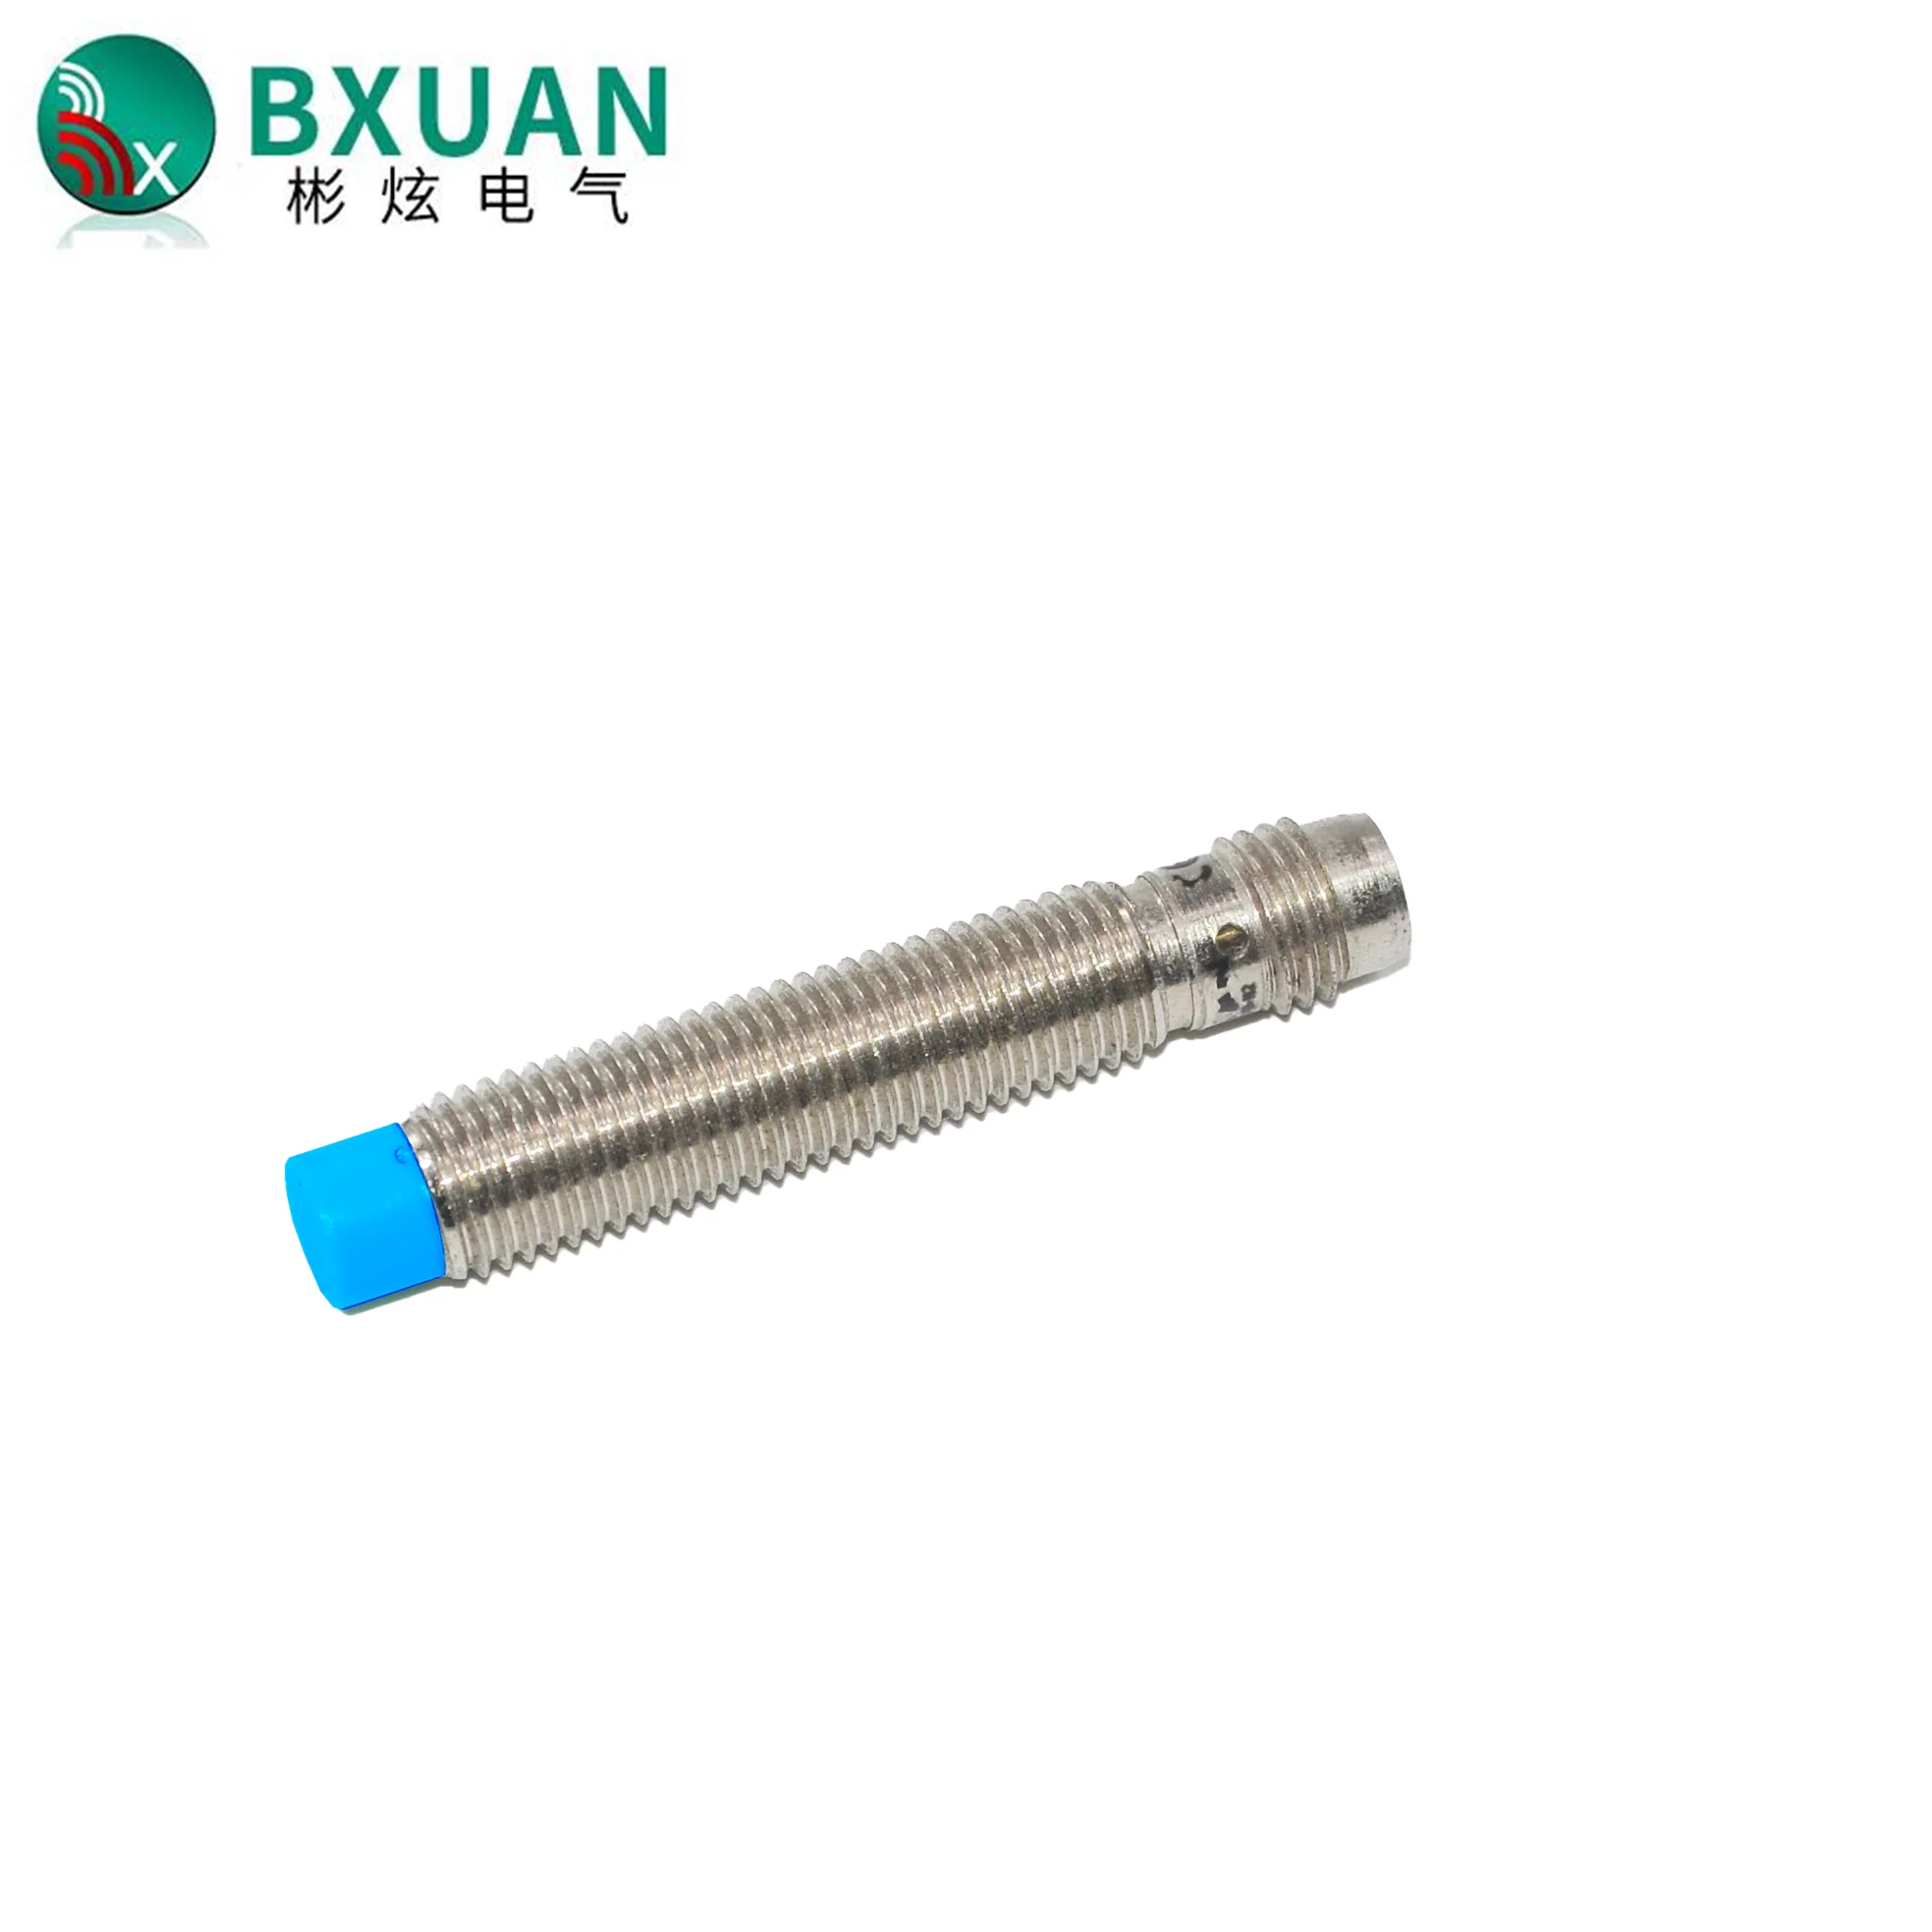 

BXUAN M8 Proximity Switch Sensor DC 2-wire NPN PNP NO NC 3PIN 4PIN Inductive Sensor Sn:2mm Sensor Switch